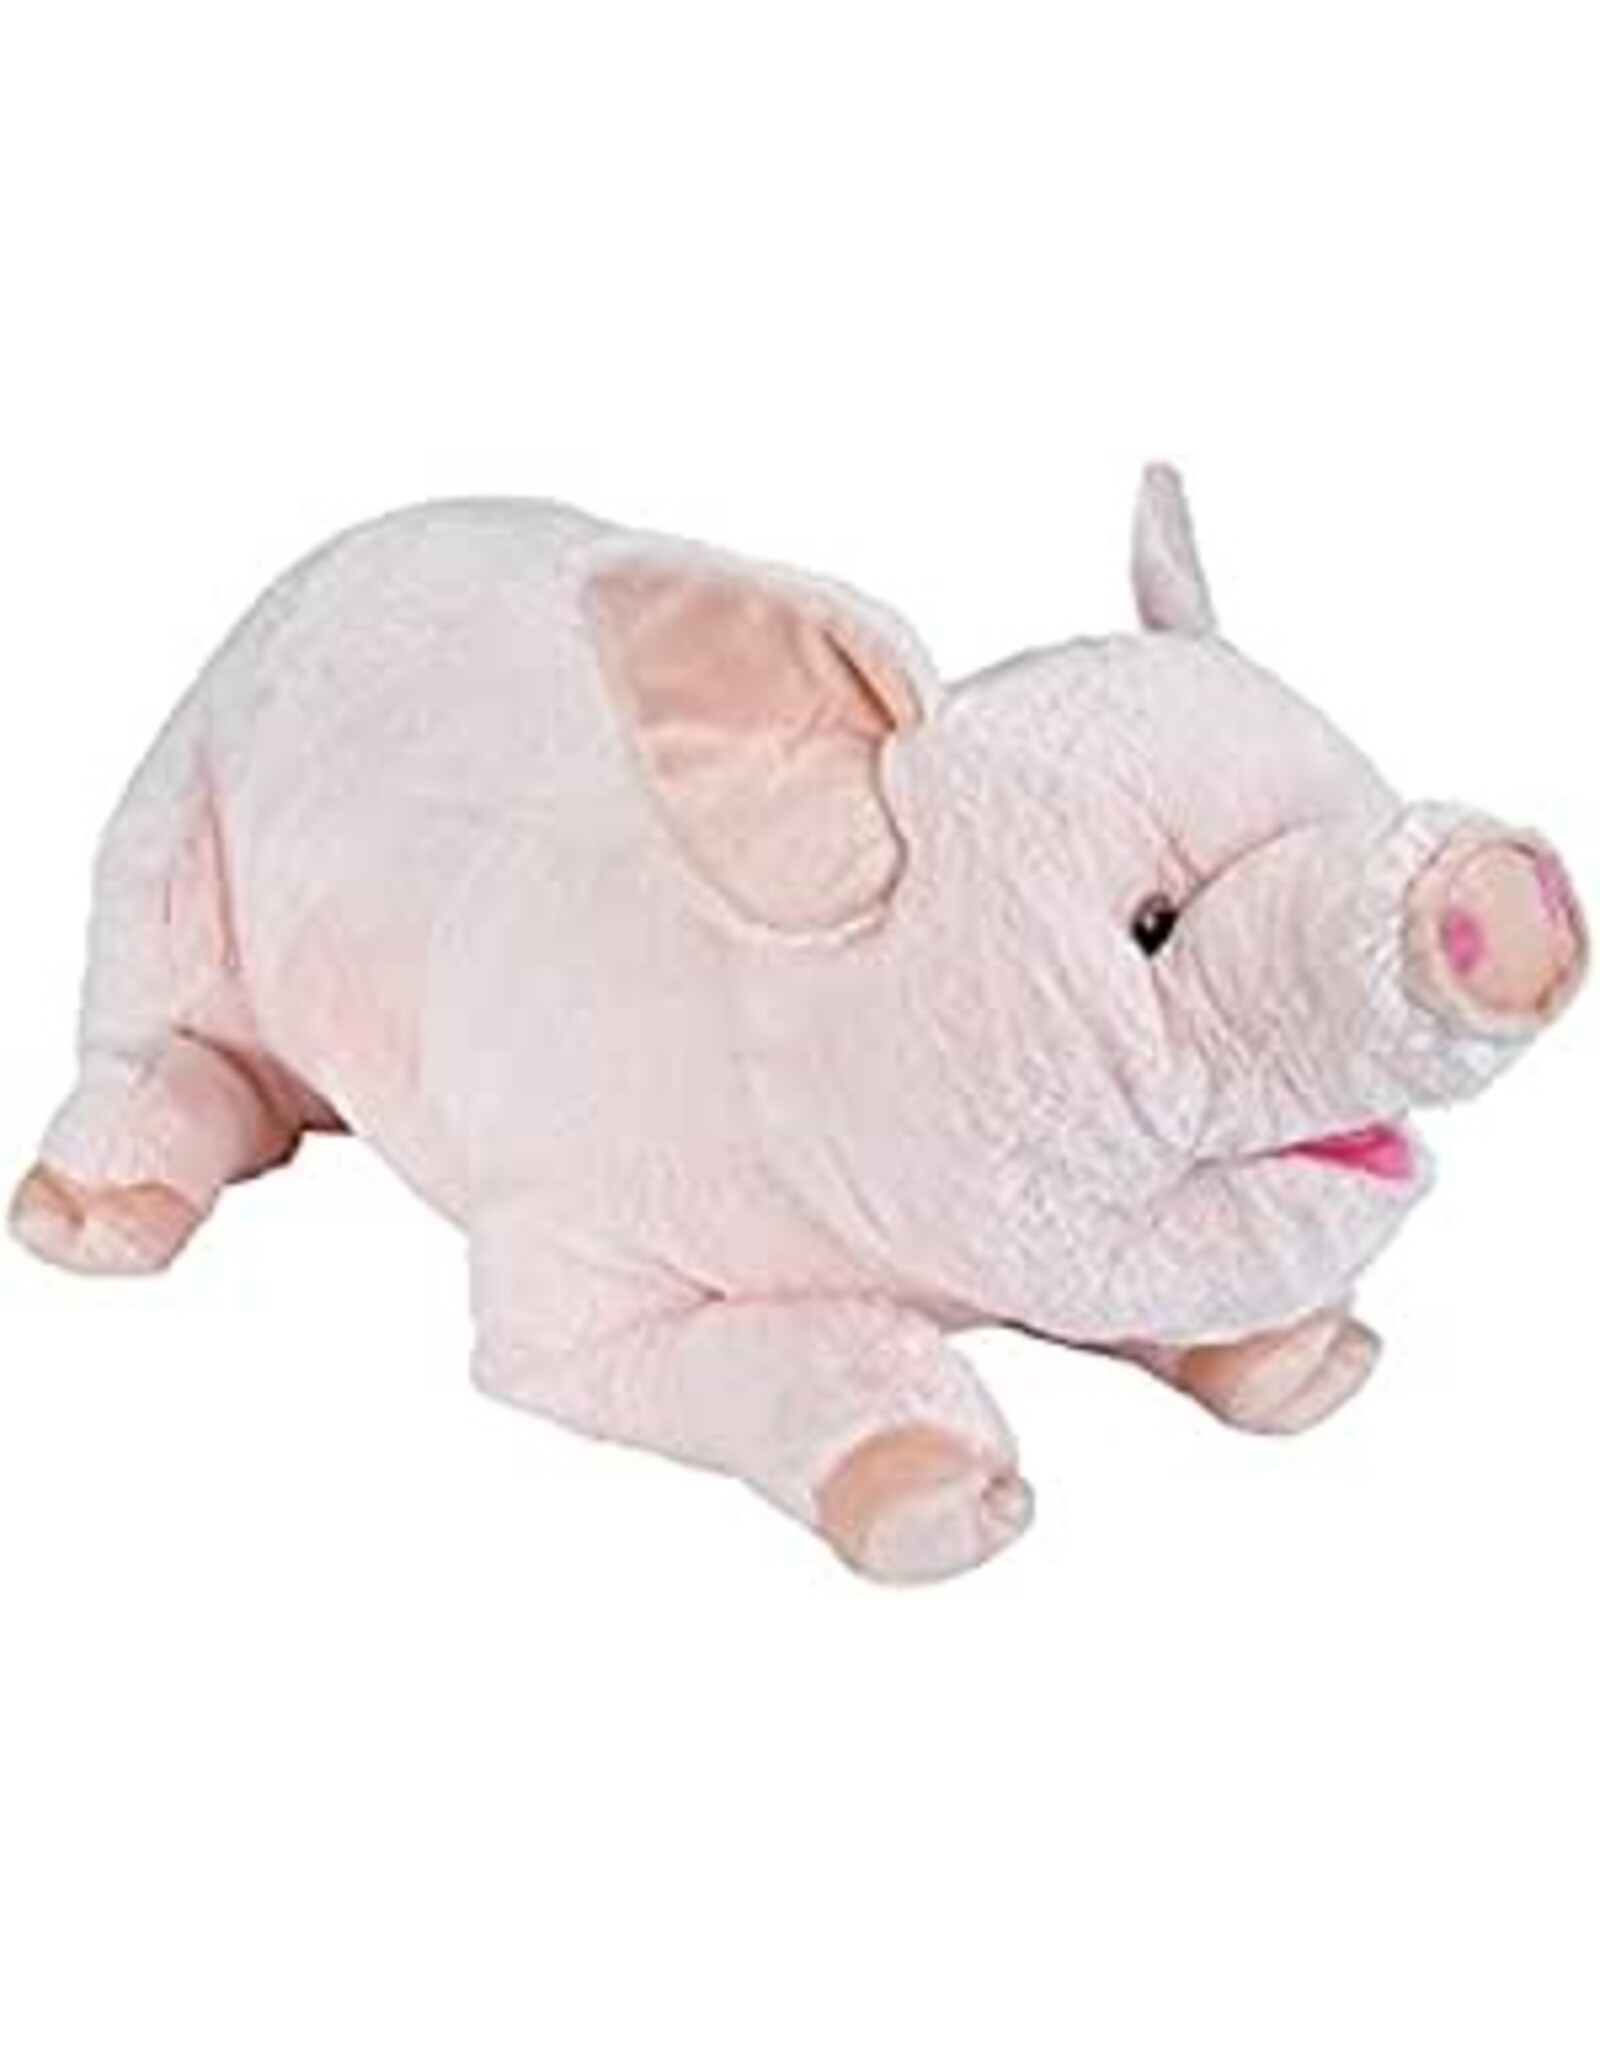 Jumbo Pig Plush